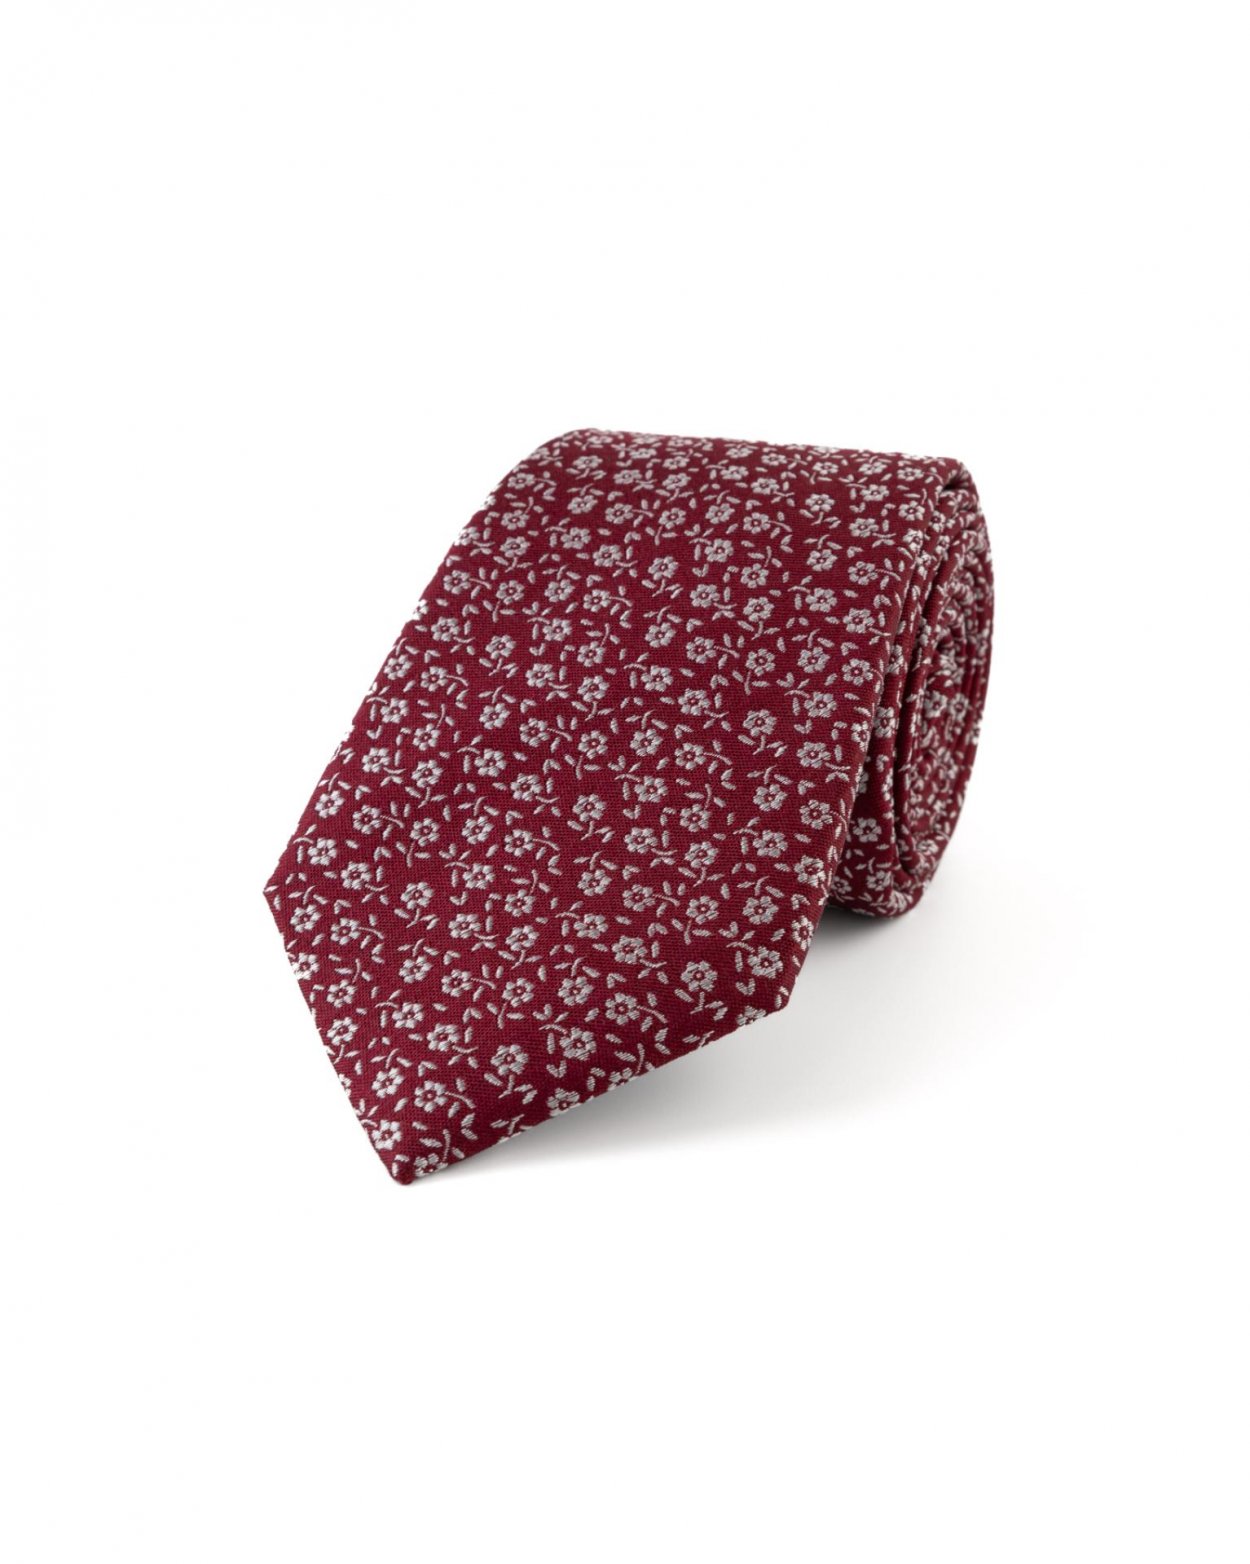 Vínová hedvábná kravata s květinovým vzorem